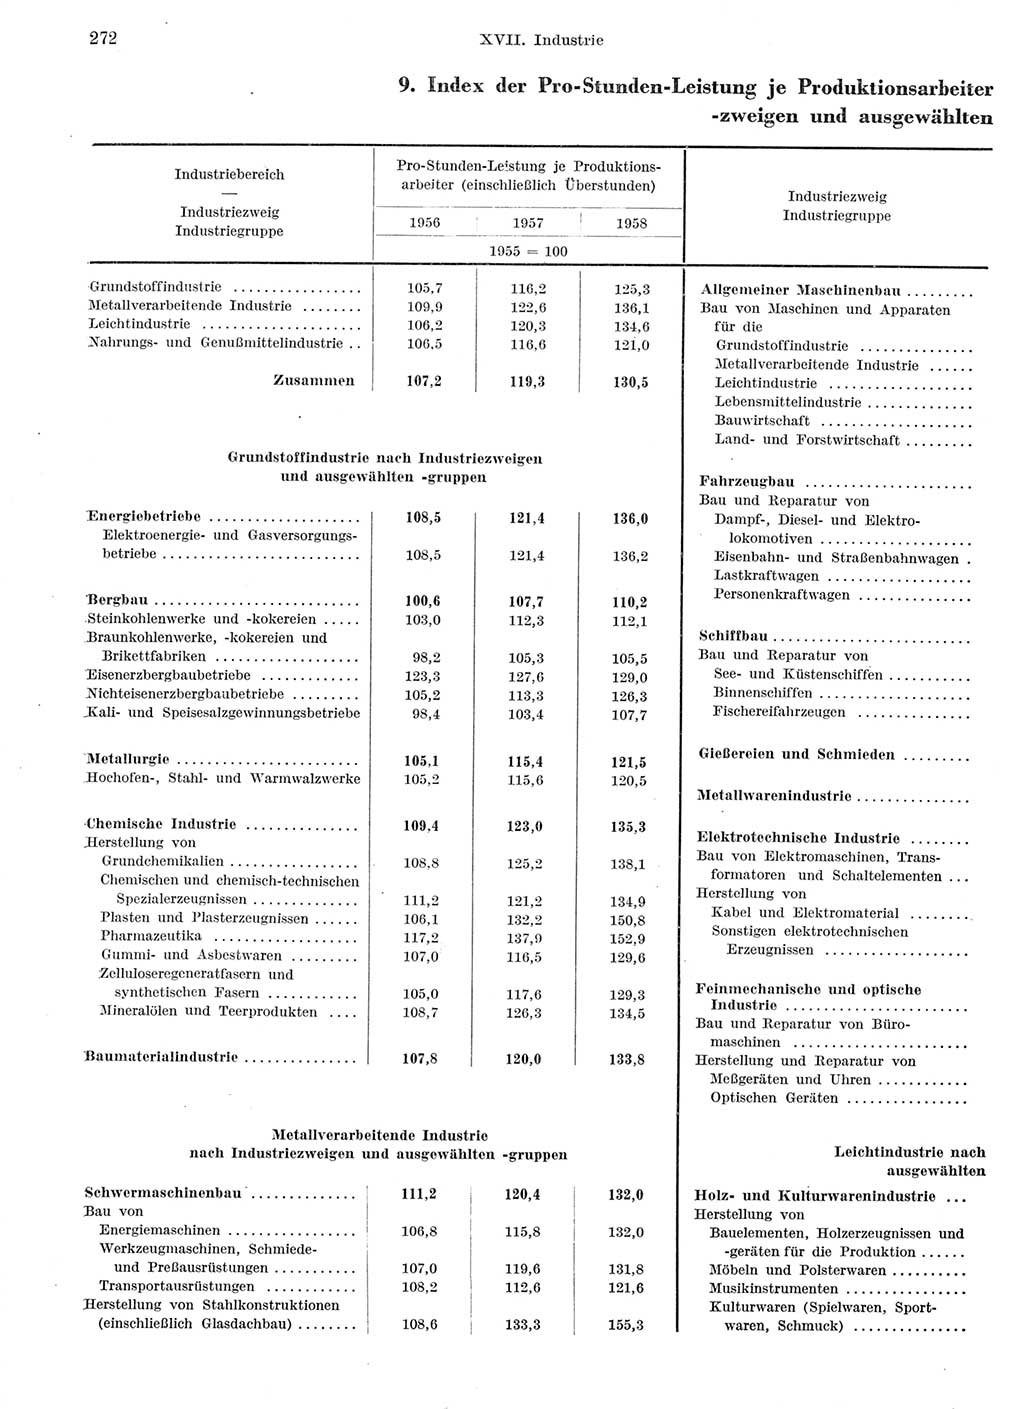 Statistisches Jahrbuch der Deutschen Demokratischen Republik (DDR) 1959, Seite 272 (Stat. Jb. DDR 1959, S. 272)